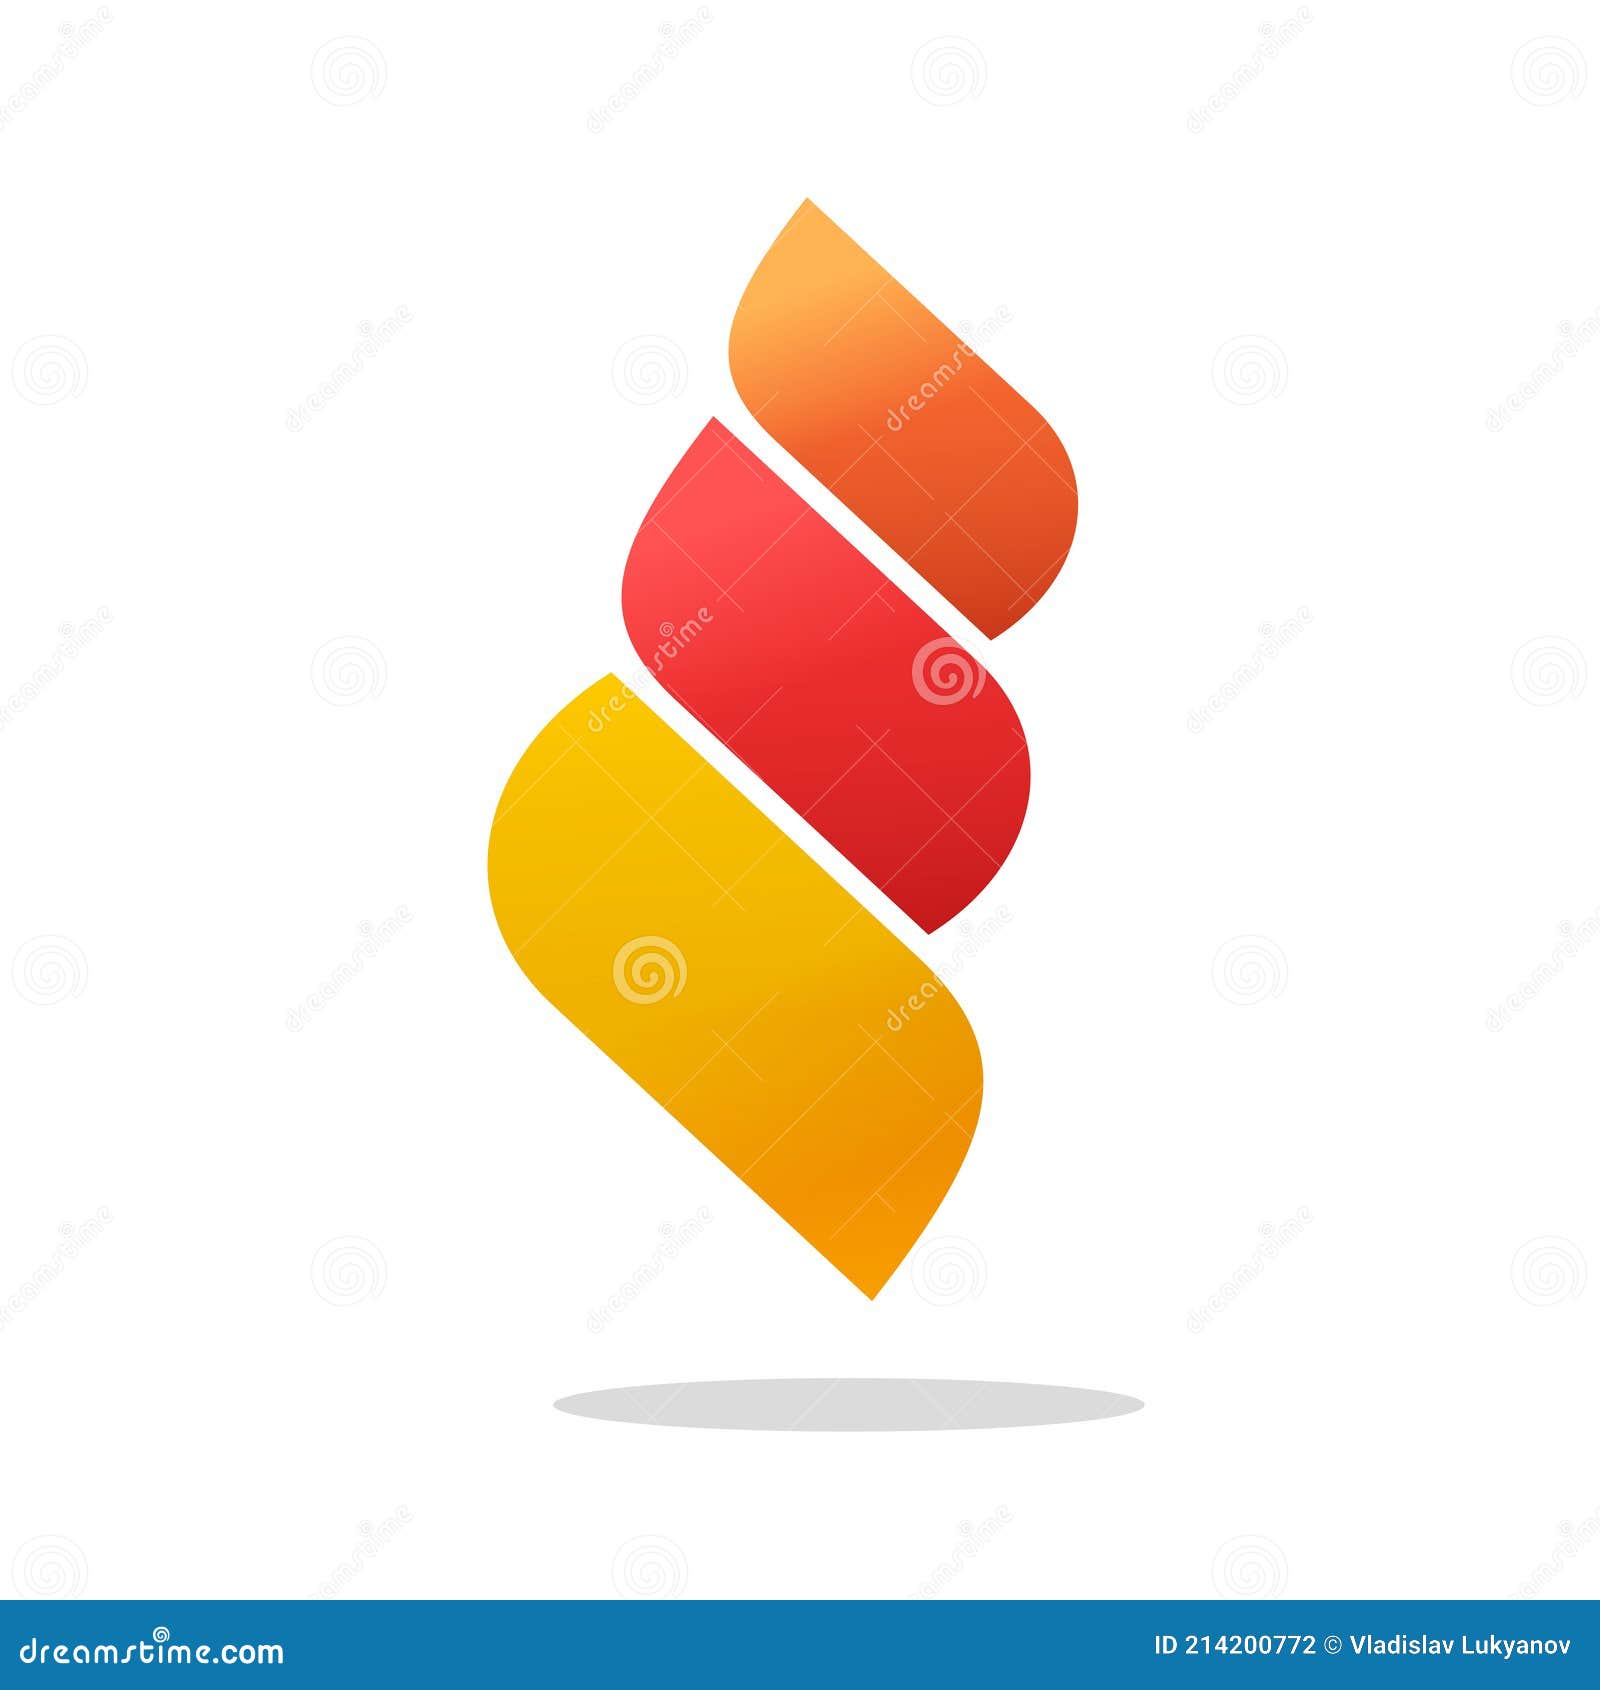 Modelo De Vetor De Design De Logotipo De Chama De Fogo PNG , Identidade,  Vermelho, Amarelo Imagem PNG e Vetor Para Download Gratuito